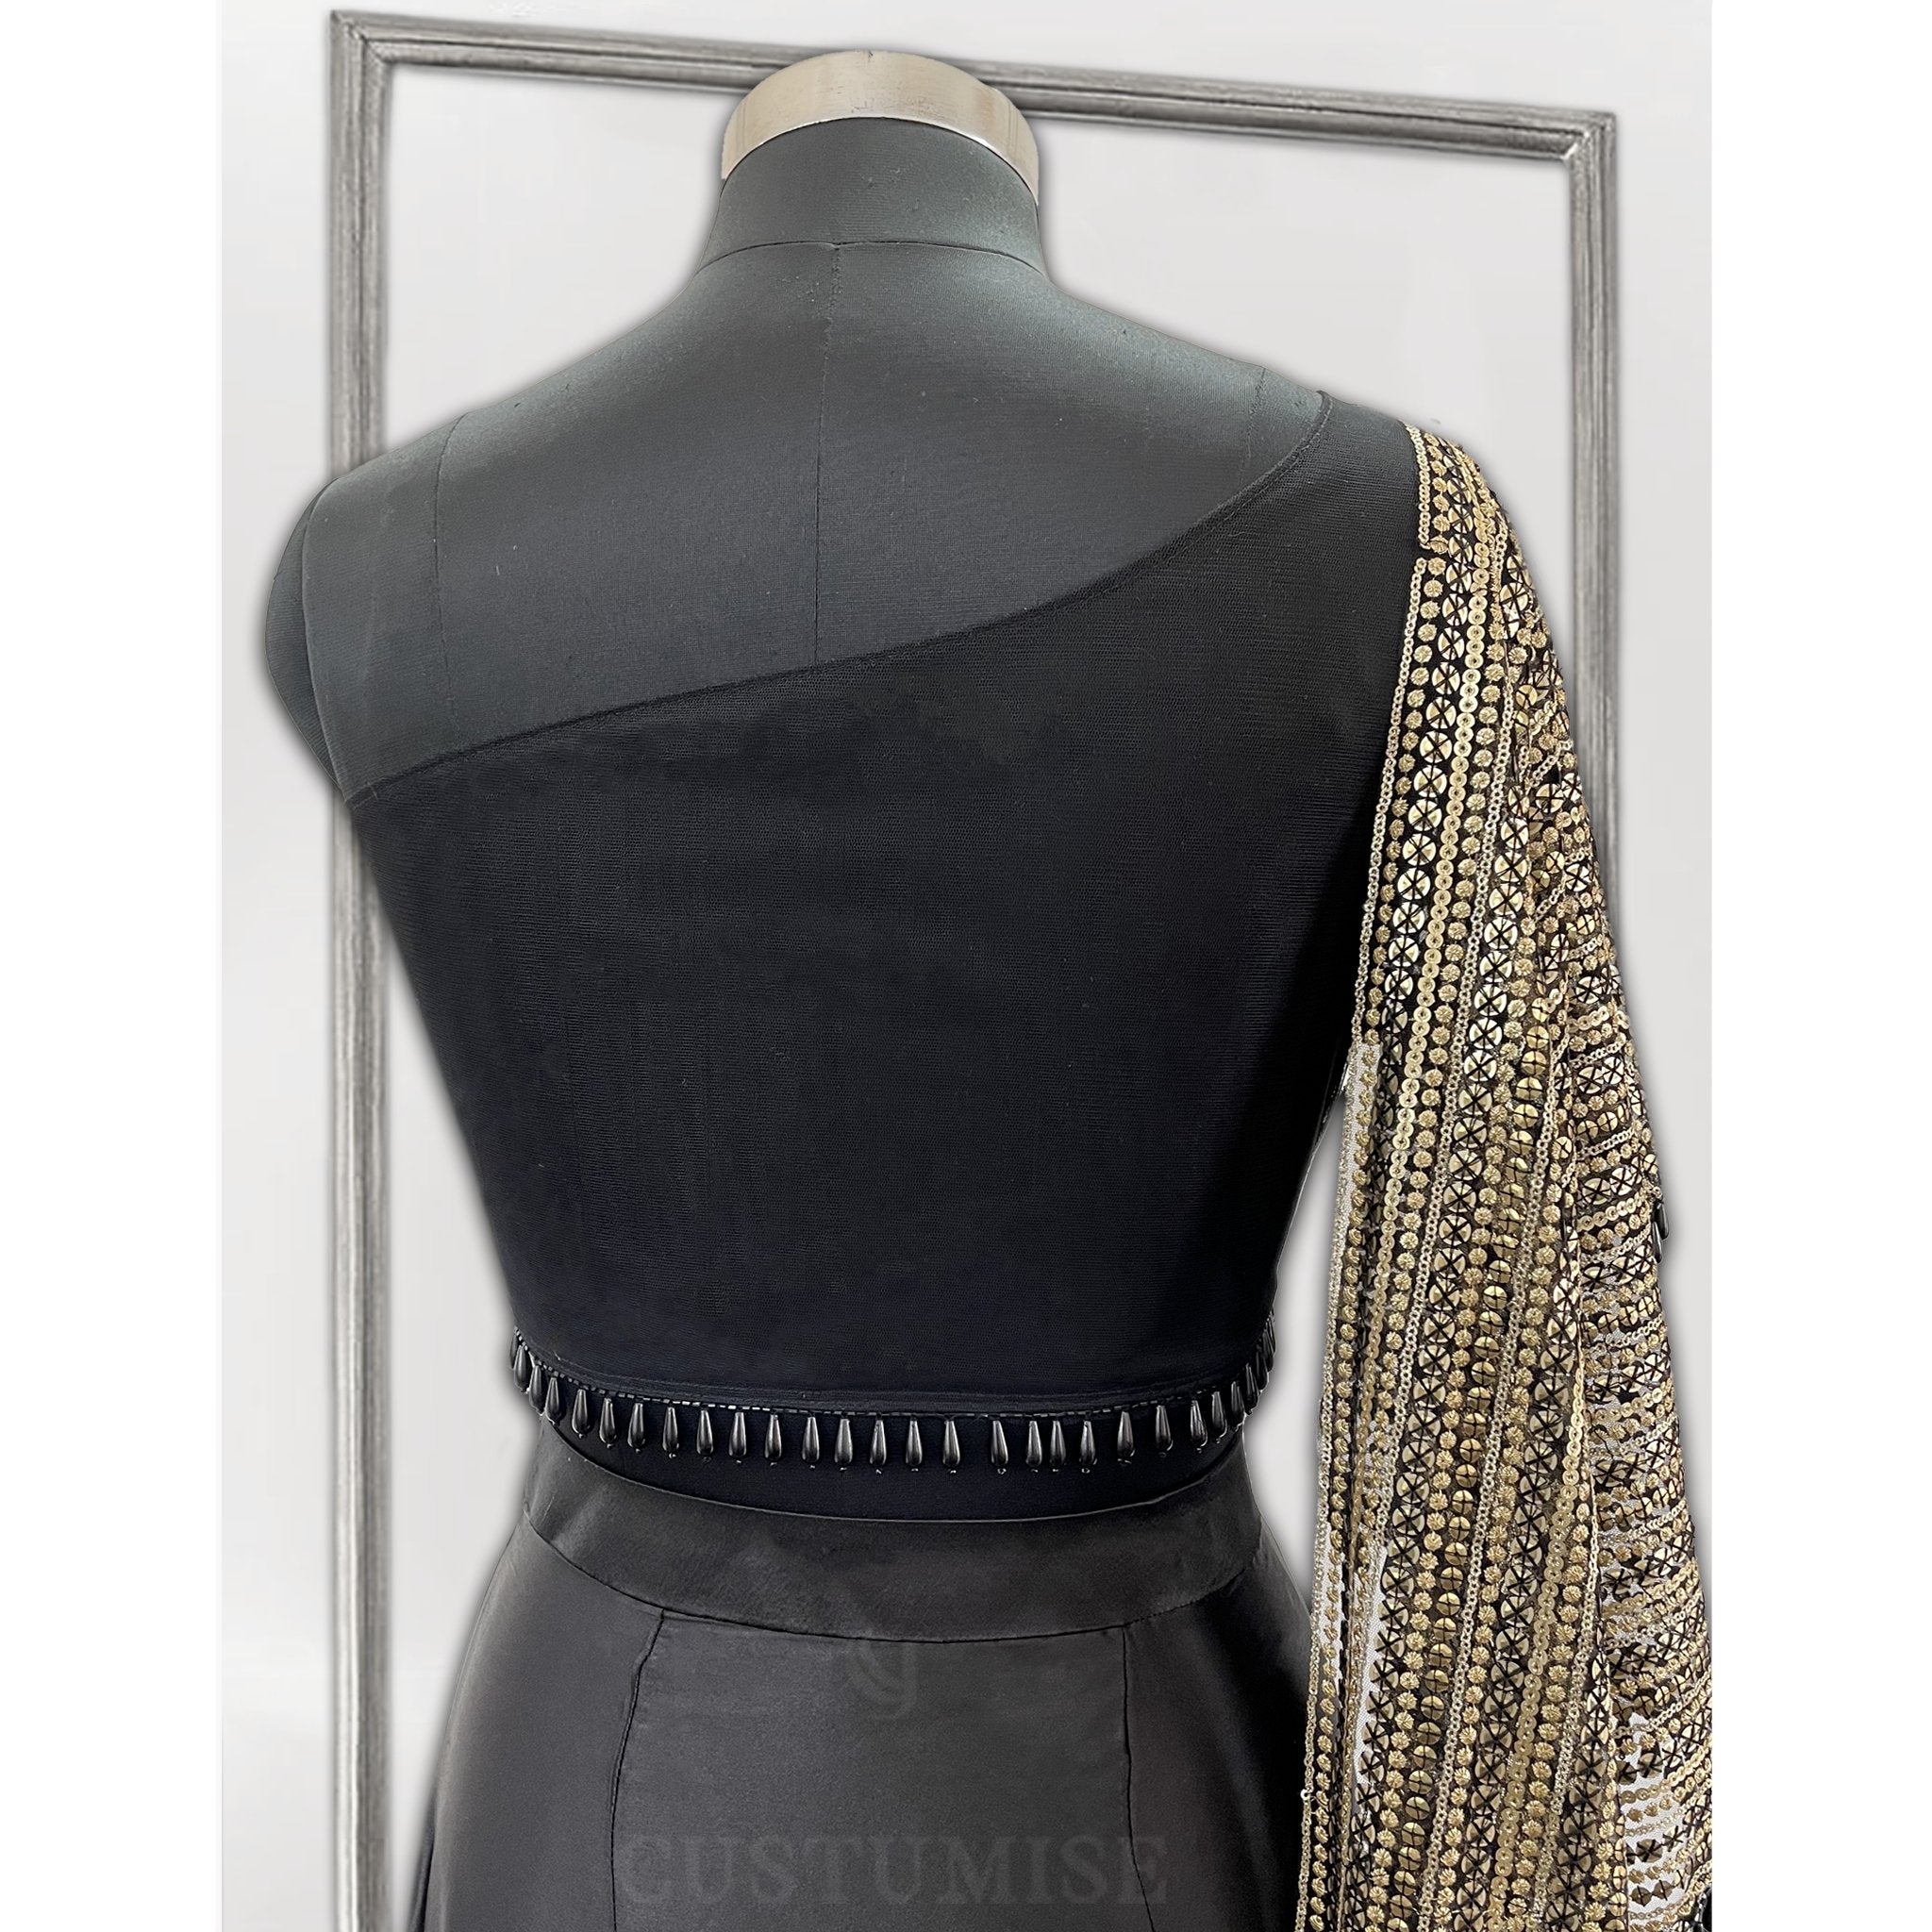 Black & Gold Draped Dhoti Skirt Set - Indian Designer Bridal Wedding Outfit